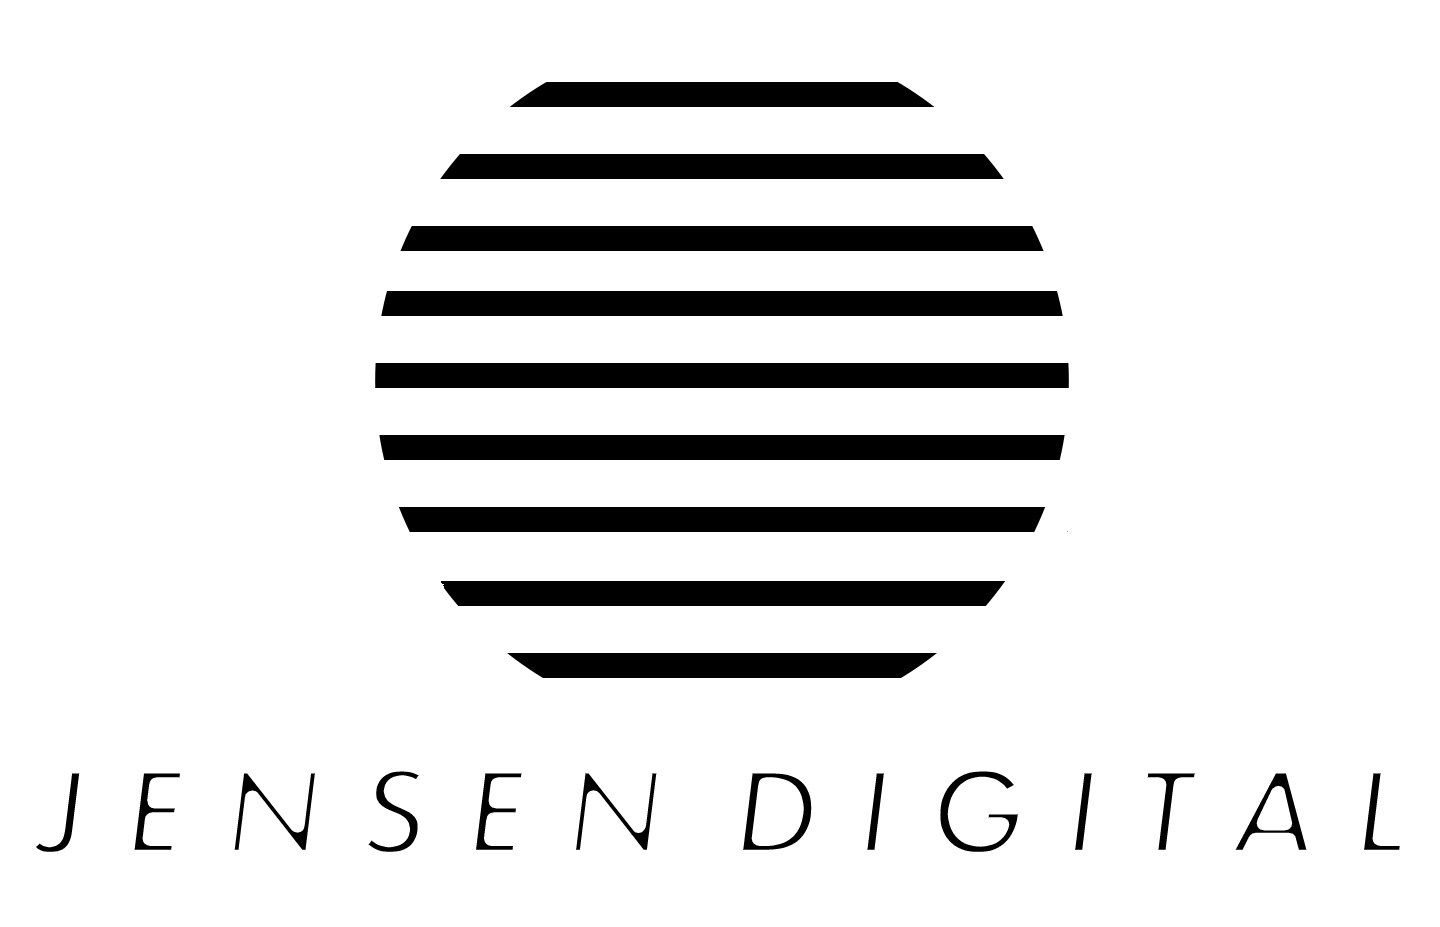 Jensen Digital Services